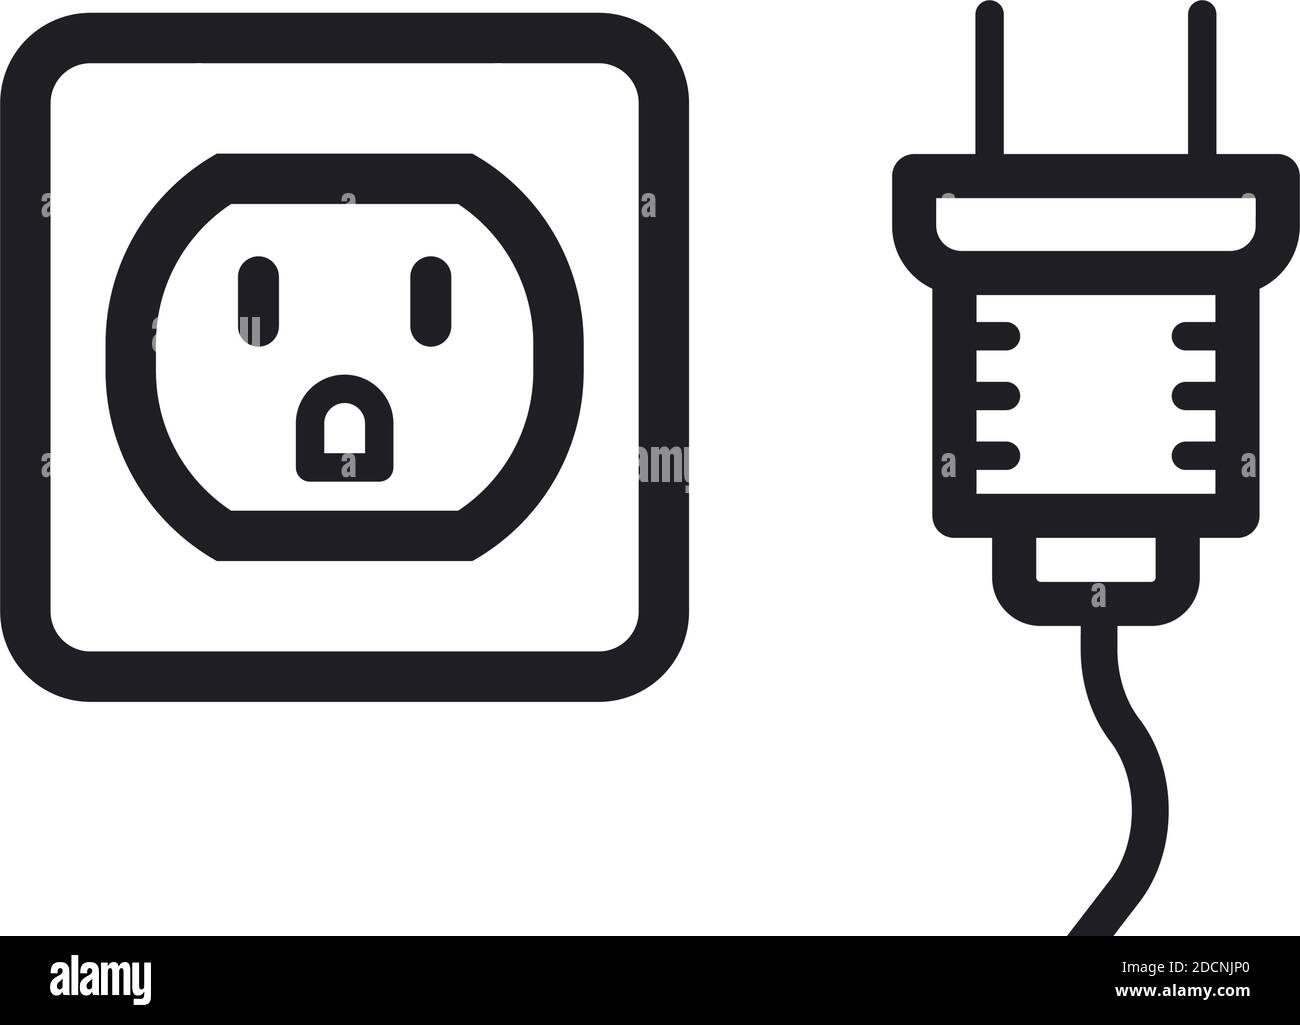 Toma de corriente eléctrica y enchufe tipo b estándar de ee.uu icono de  ilustración vectorial Imagen Vector de stock - Alamy